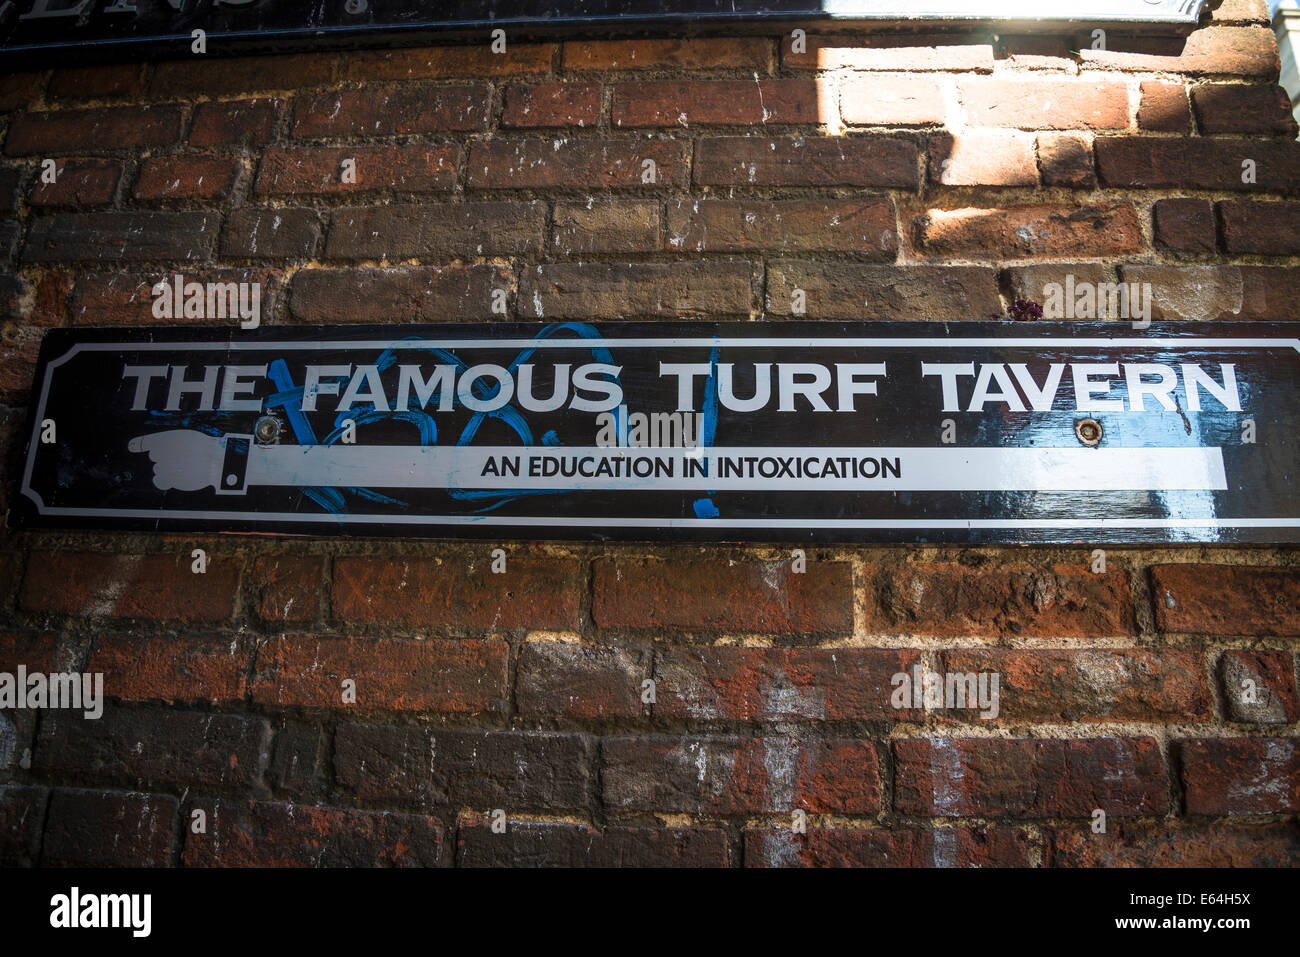 Une éducation dans l'intoxication, panneau pour Turf Tavern, historique public house, Oxford, England, UK Banque D'Images